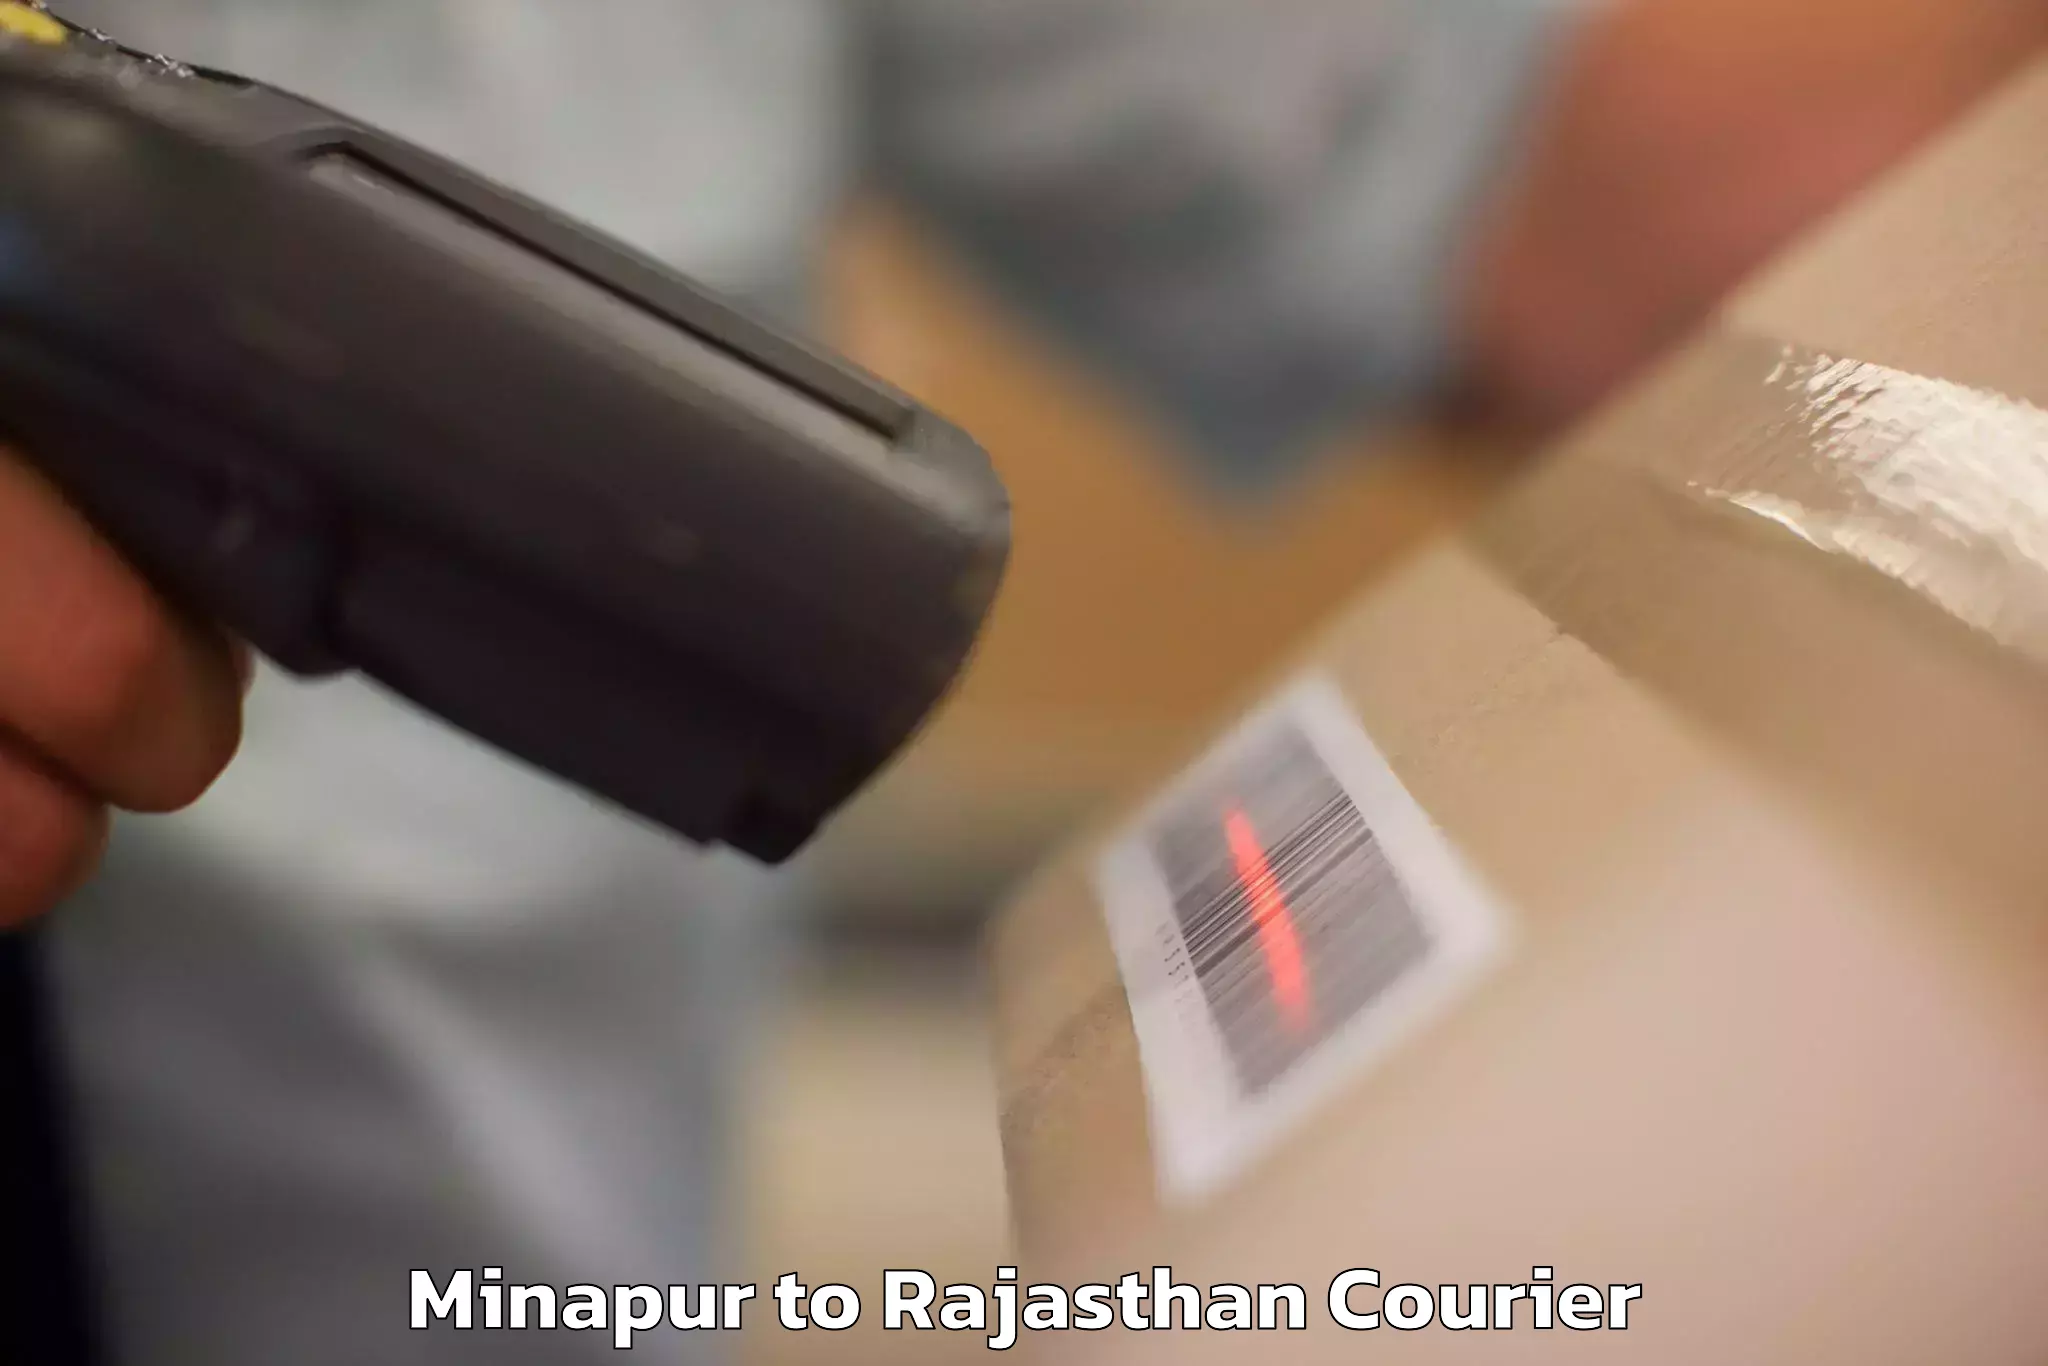 Baggage transport network Minapur to Rajasthan